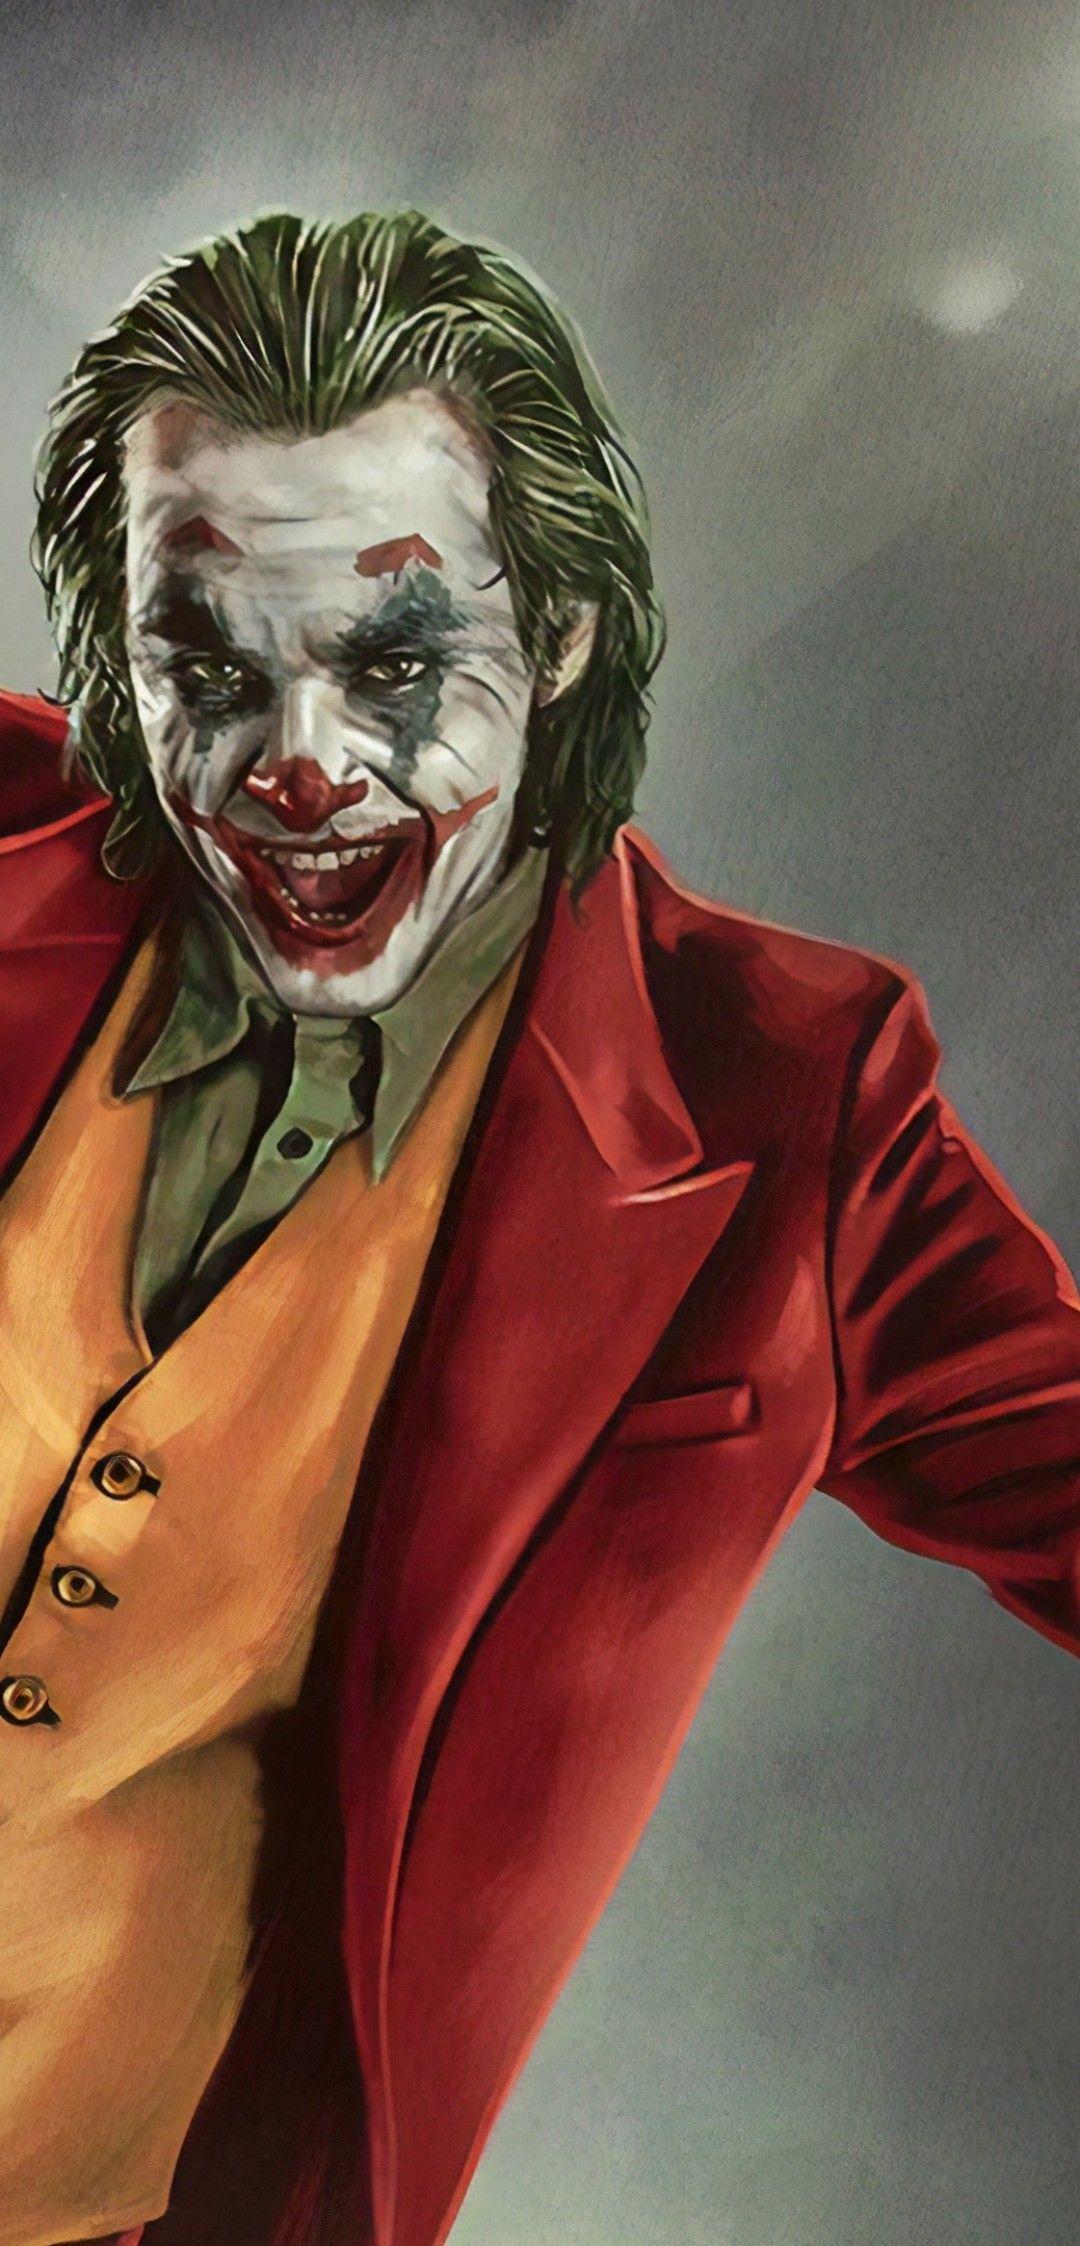 Joker 2019 Wallpapers - Top Free Joker 2019 Backgrounds - WallpaperAccess